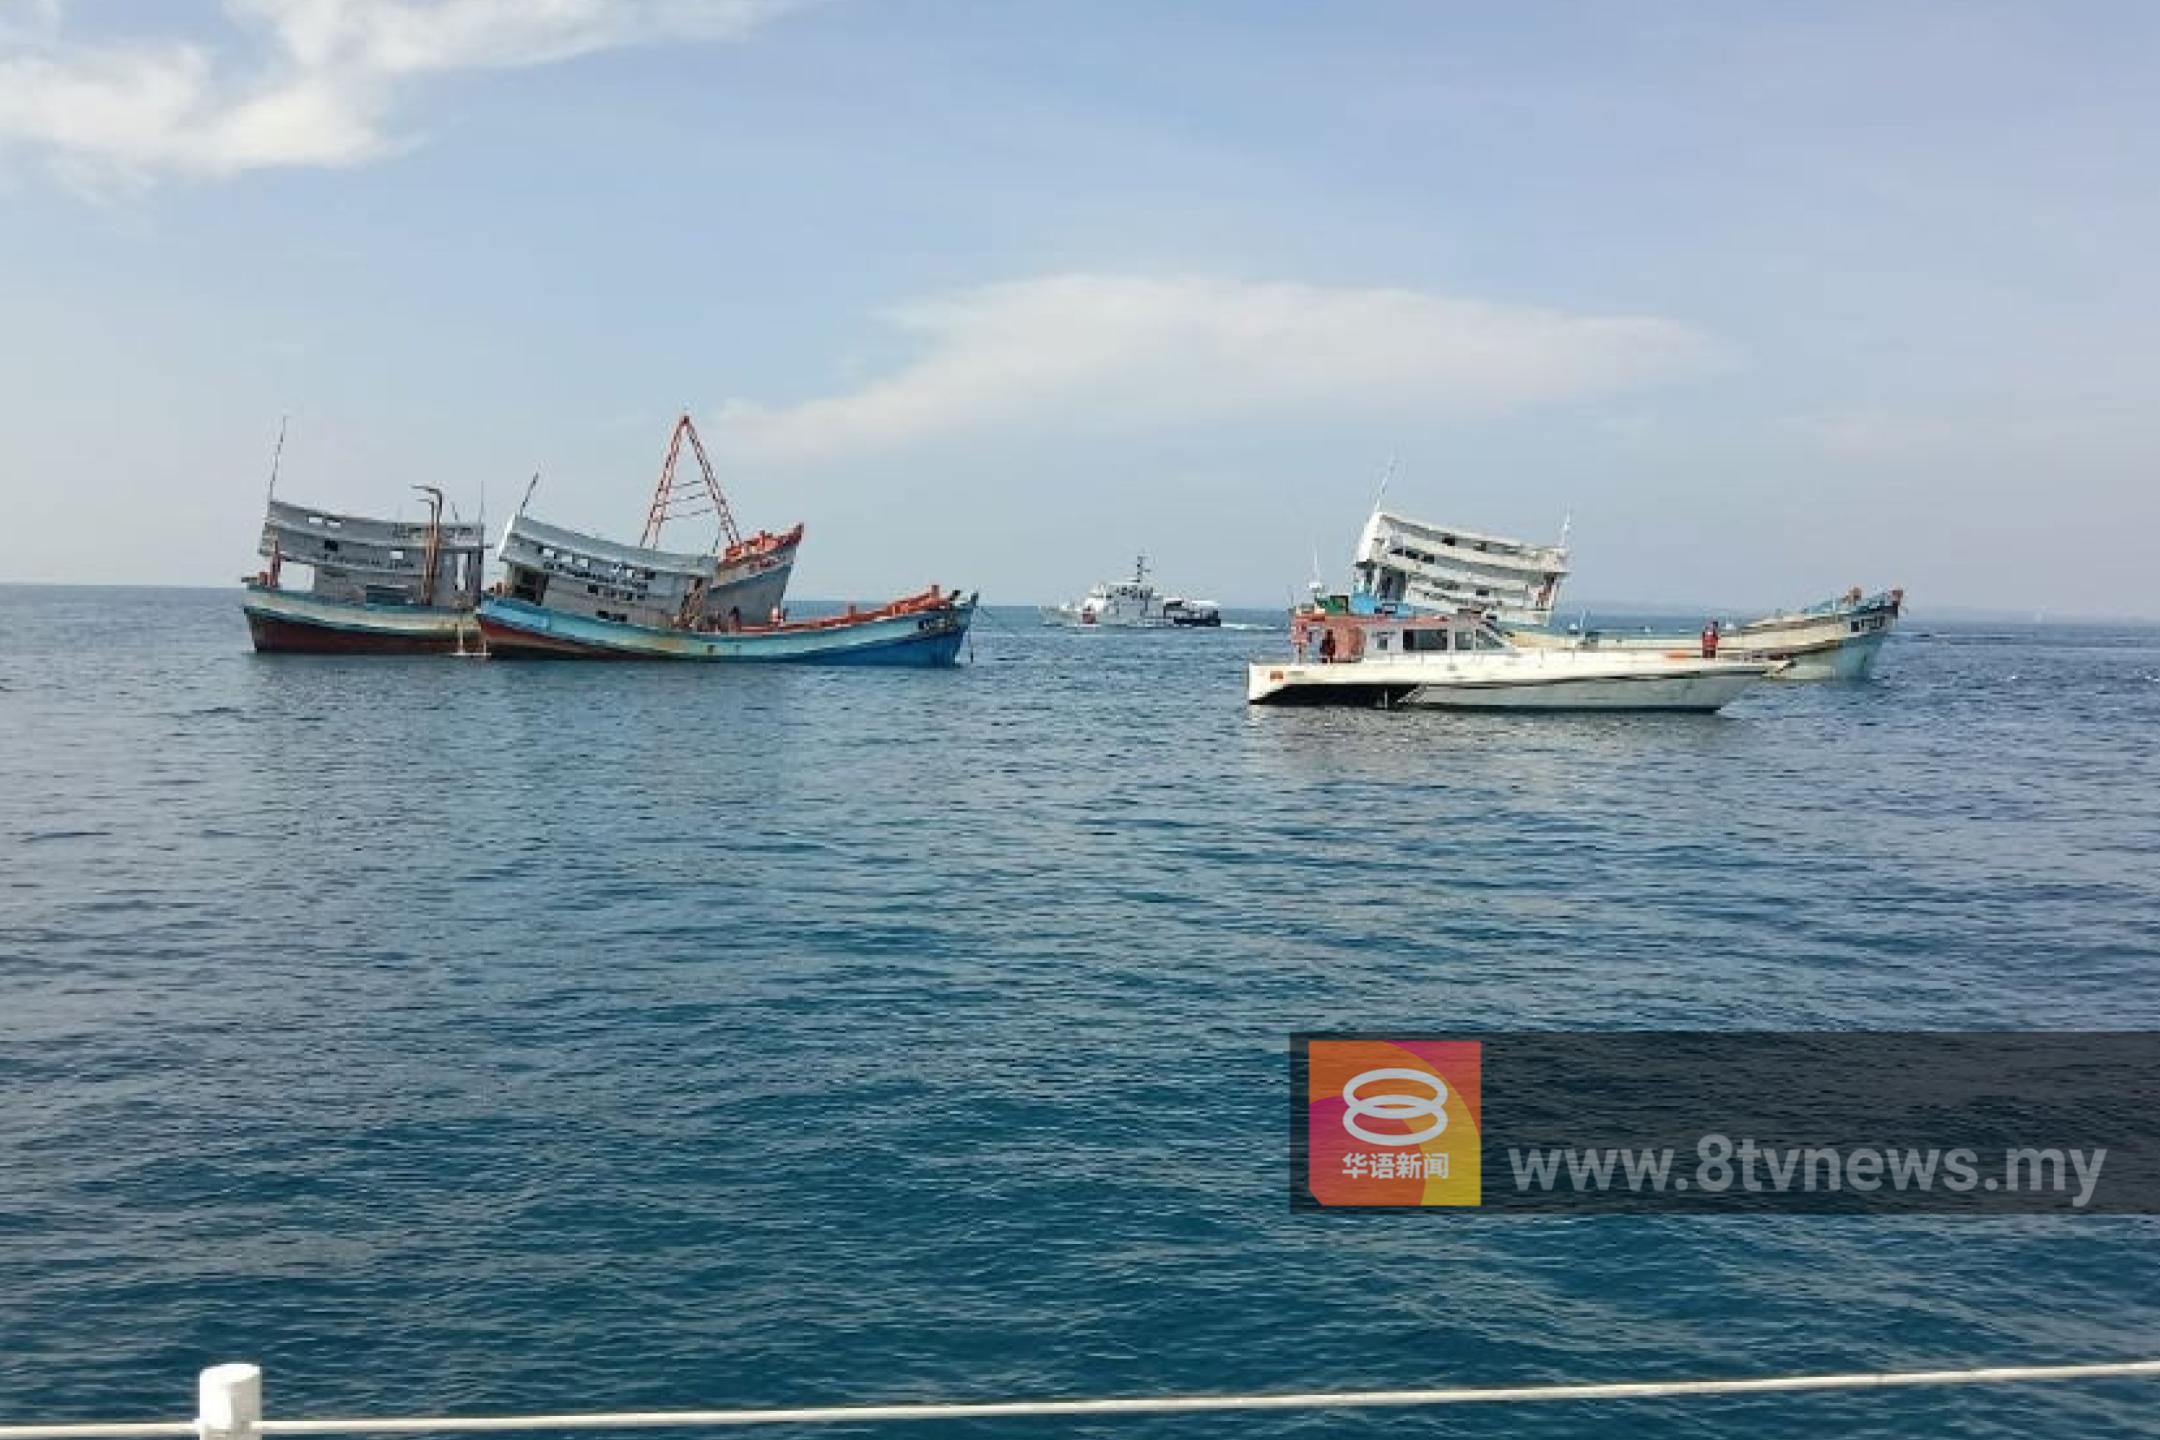 265越南渔船擅闯我国海域 非法捕捞问题待解决 